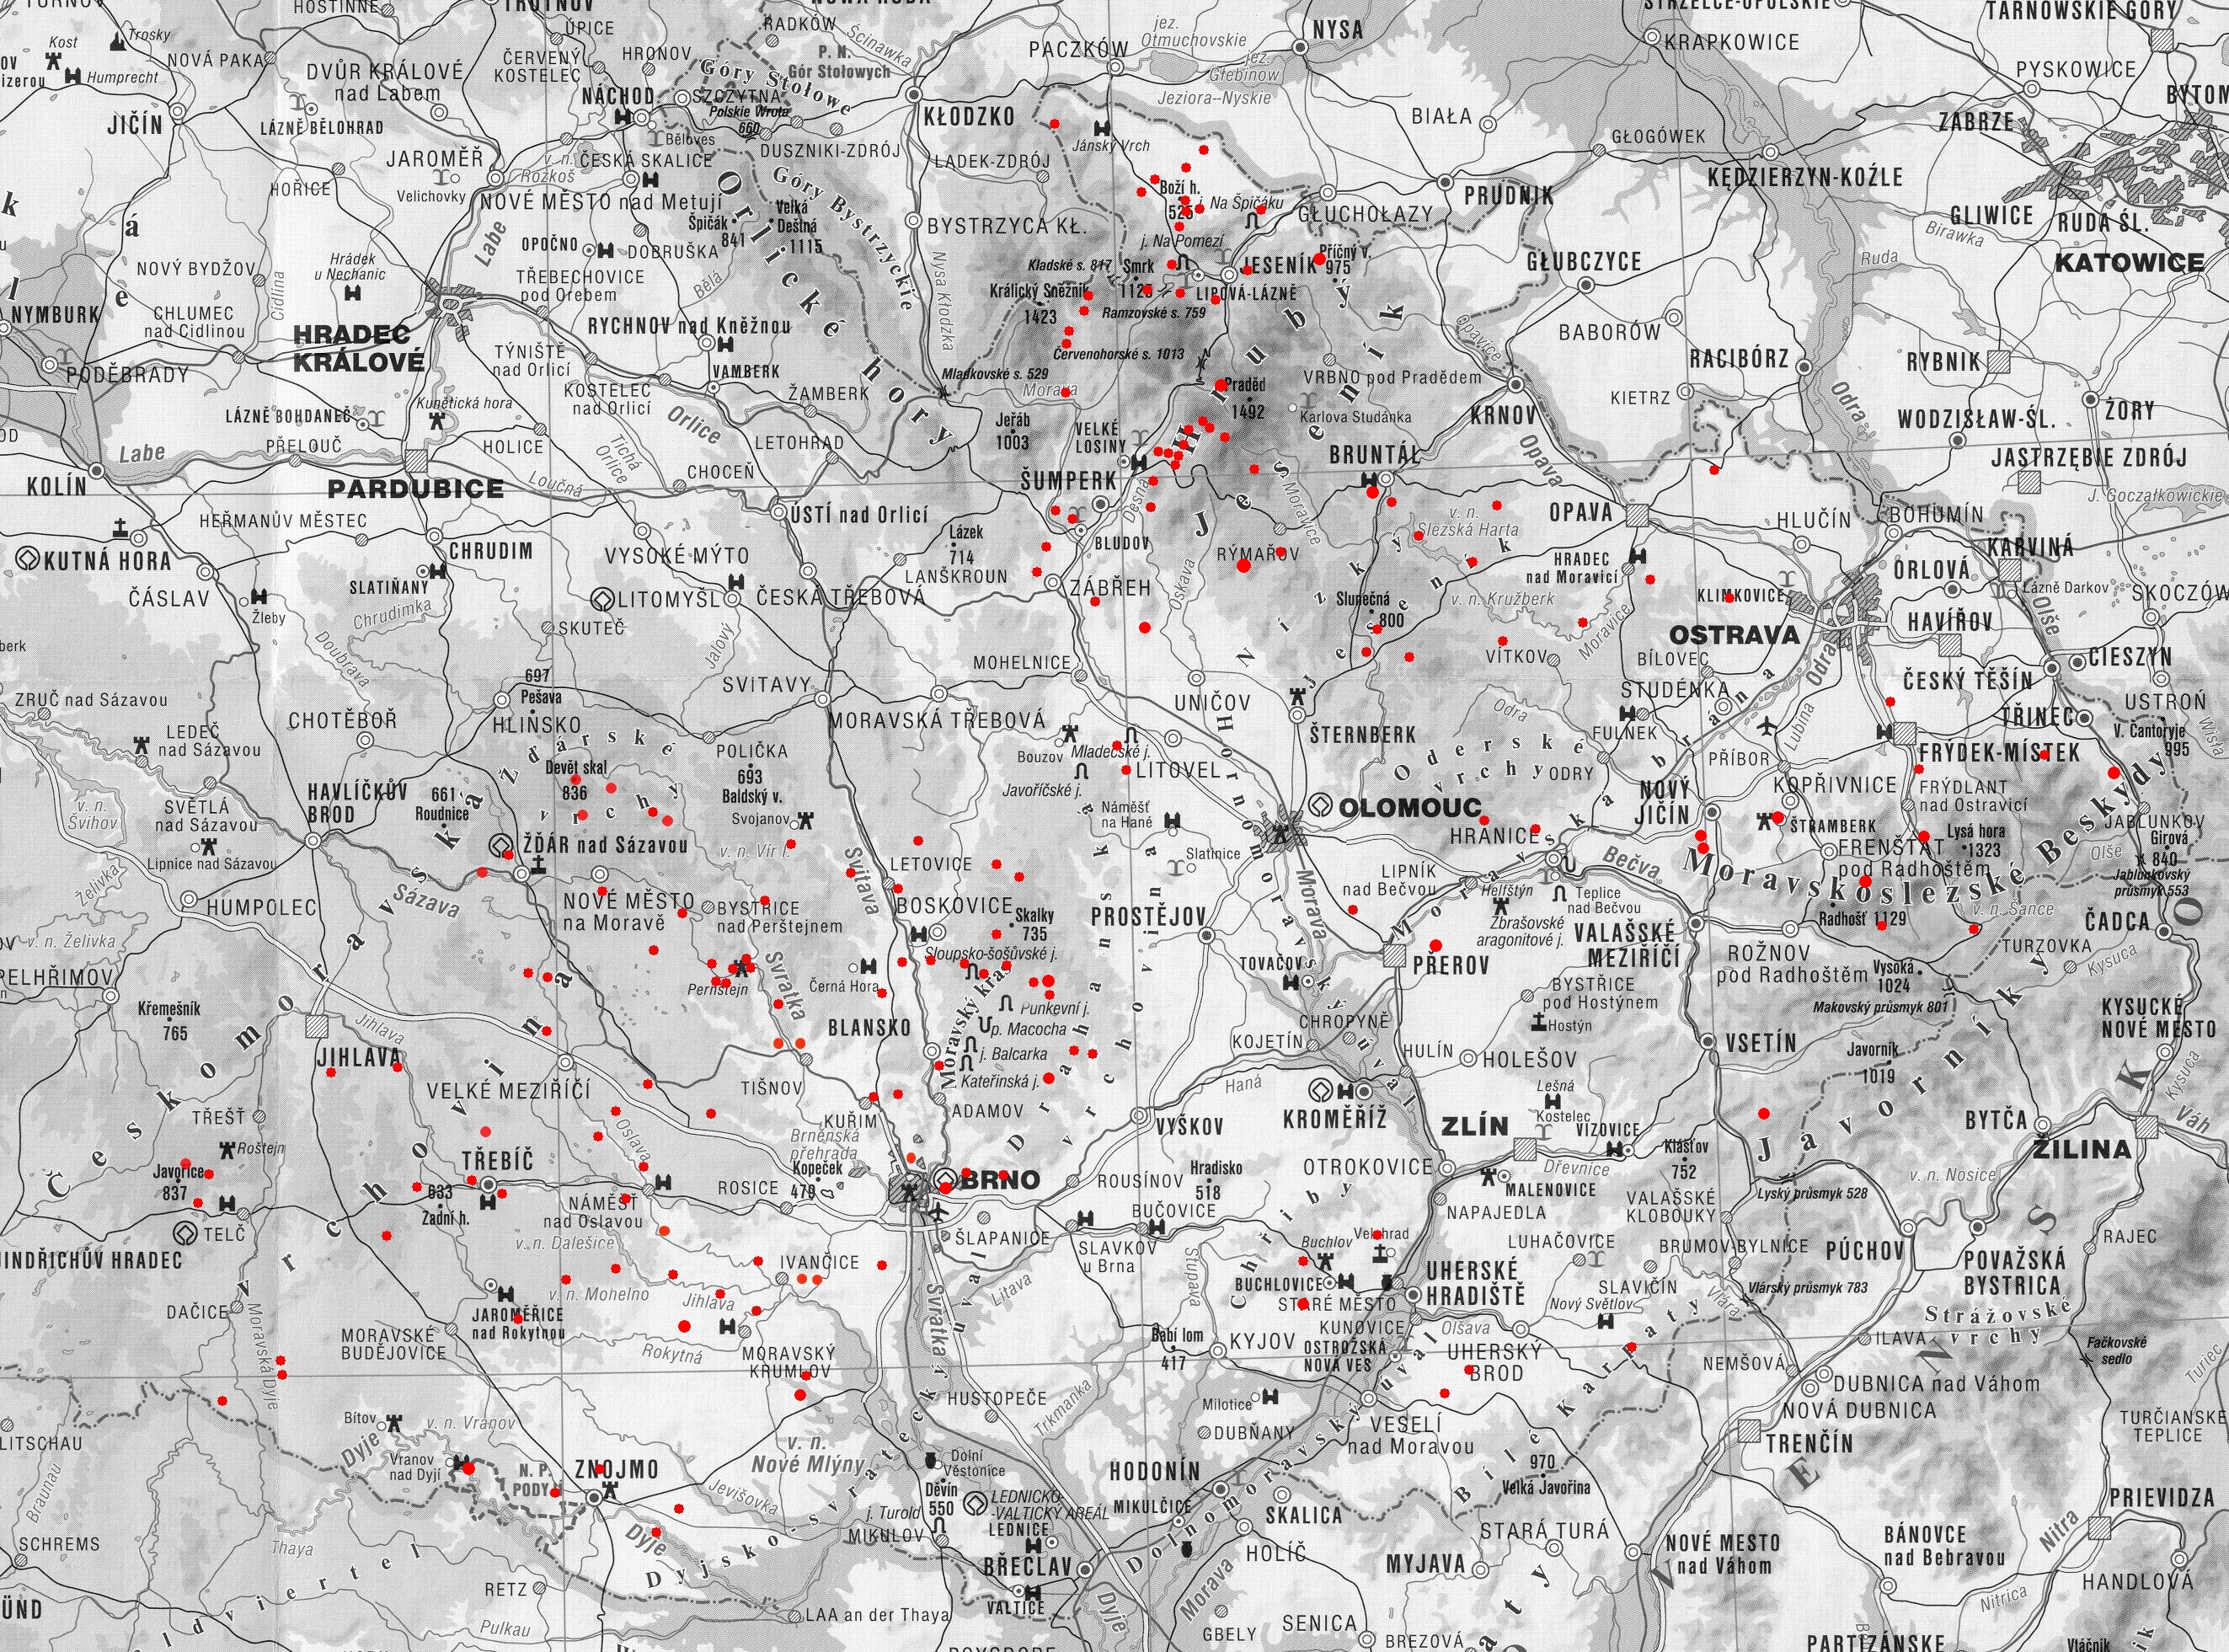 klikací mapa Moravy pro výběr lokality (lze obejít přes seznam lokalit)